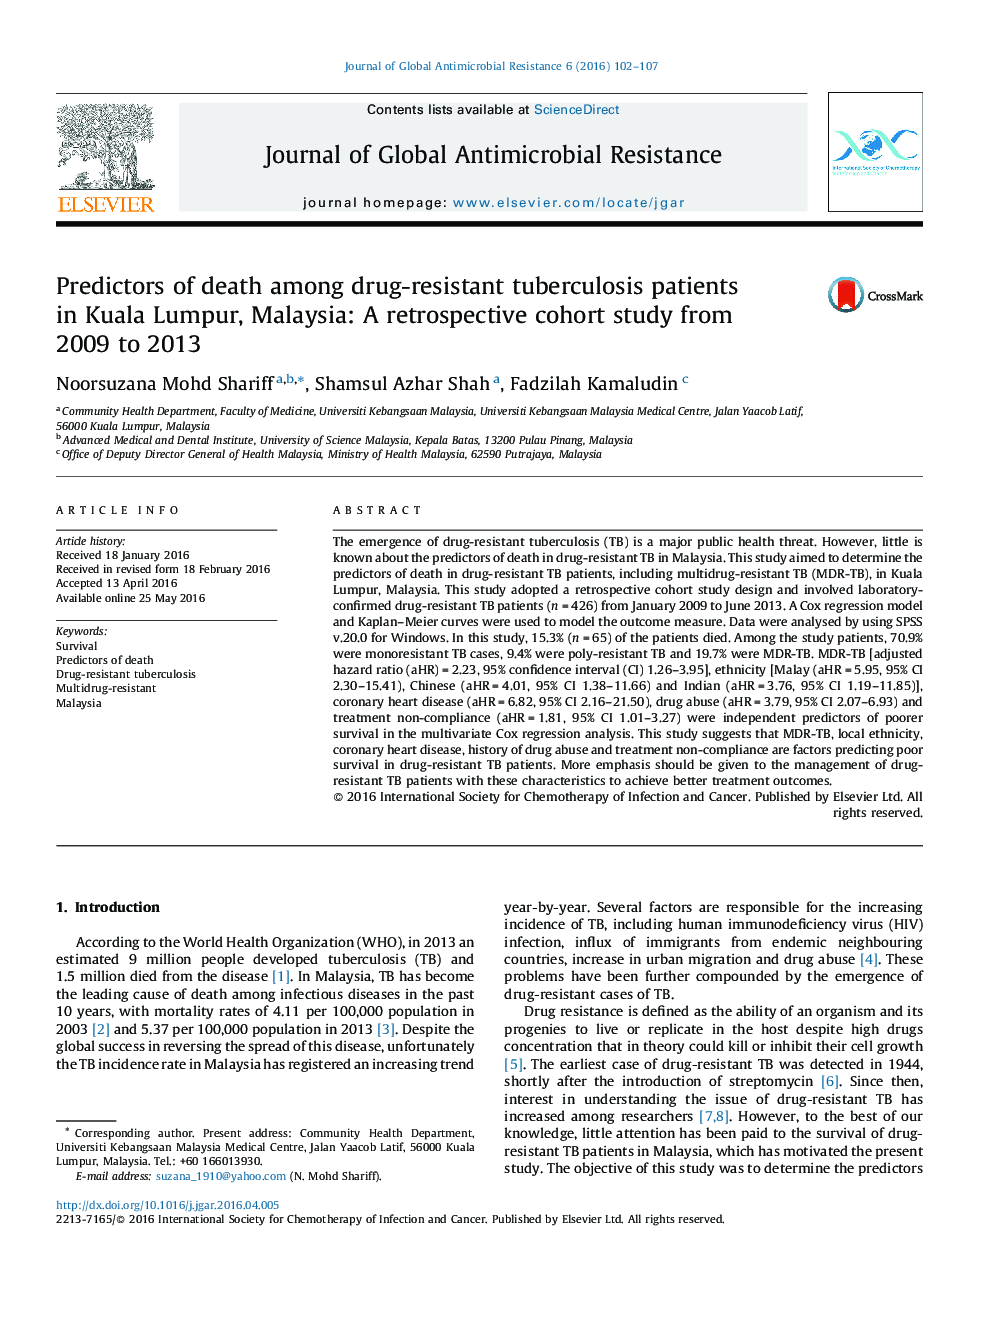 پیش بینی مرگ در بیماران مبتلا به سل مقاوم به دارو در کوالالامپور، مالزی: مطالعه کوهورت گذشته نگر از سال 2009 تا 2013 